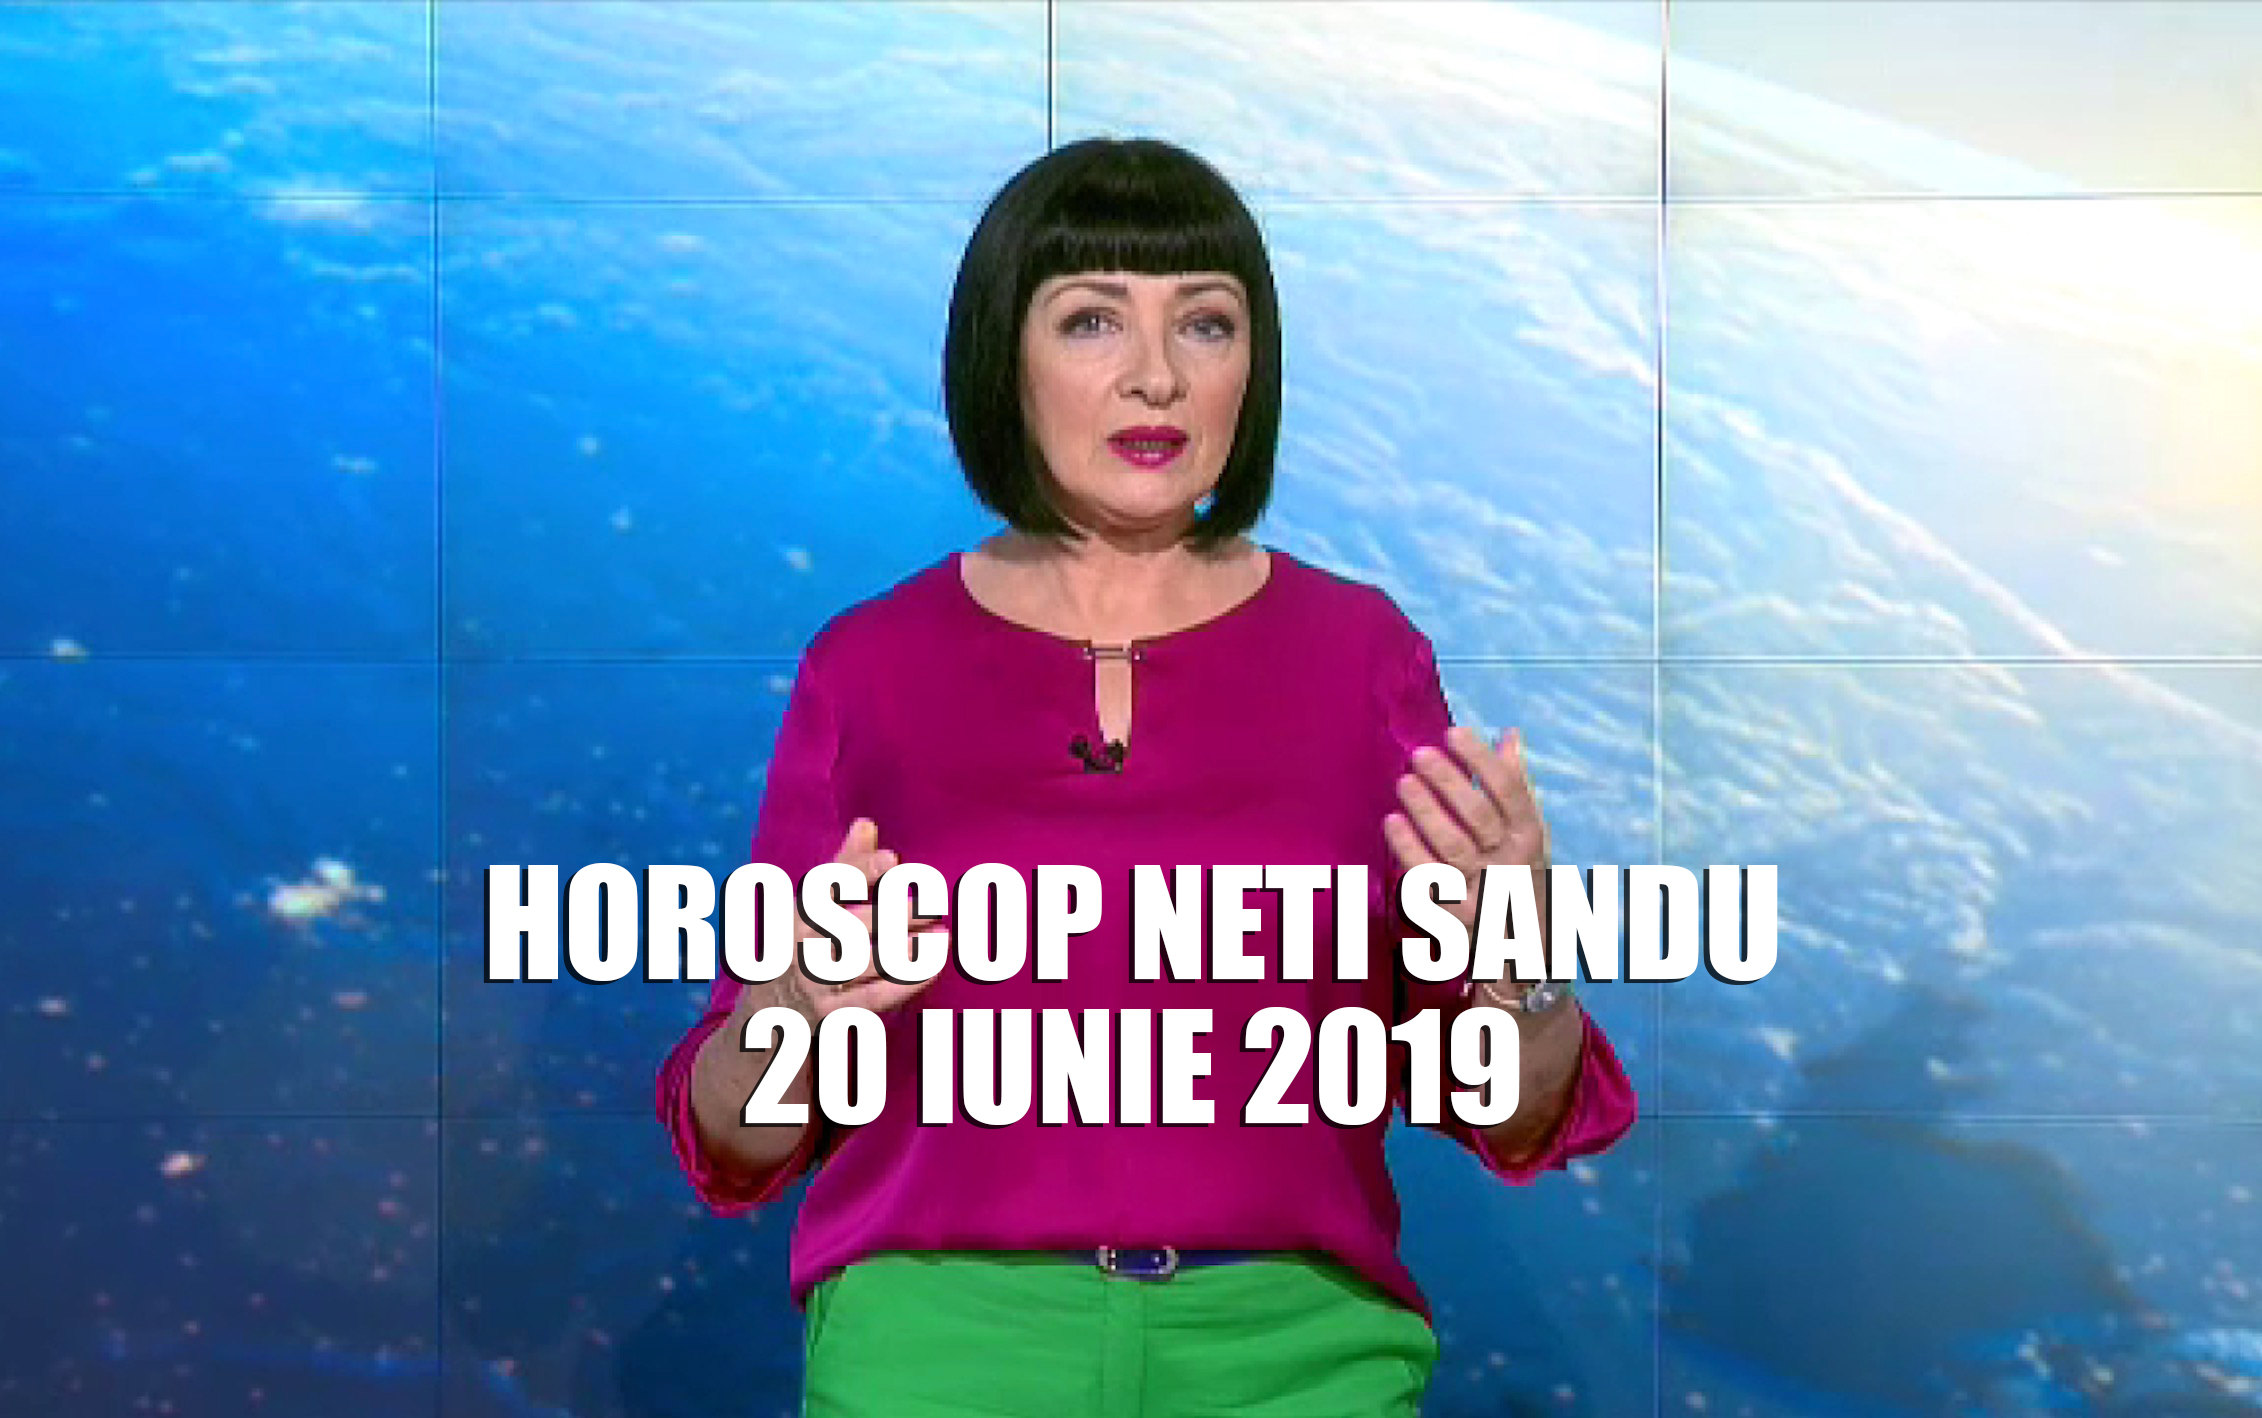 Horoscop Neti Sandu 20 iunie 2019 - Răul păresește casa acestei zodii